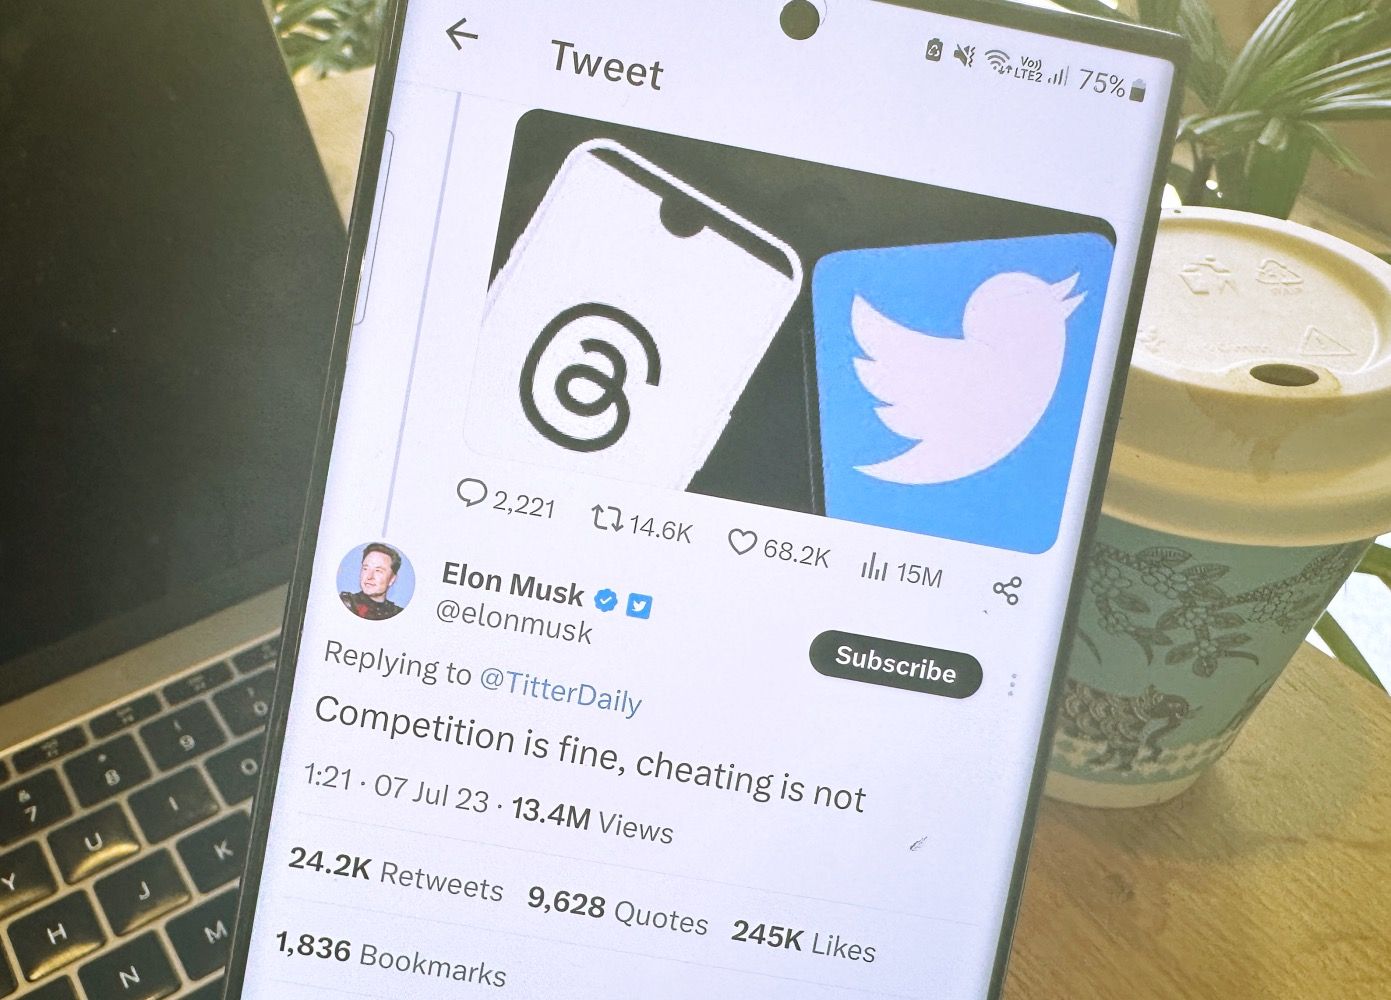 A tweet of Elon Musk on a phone